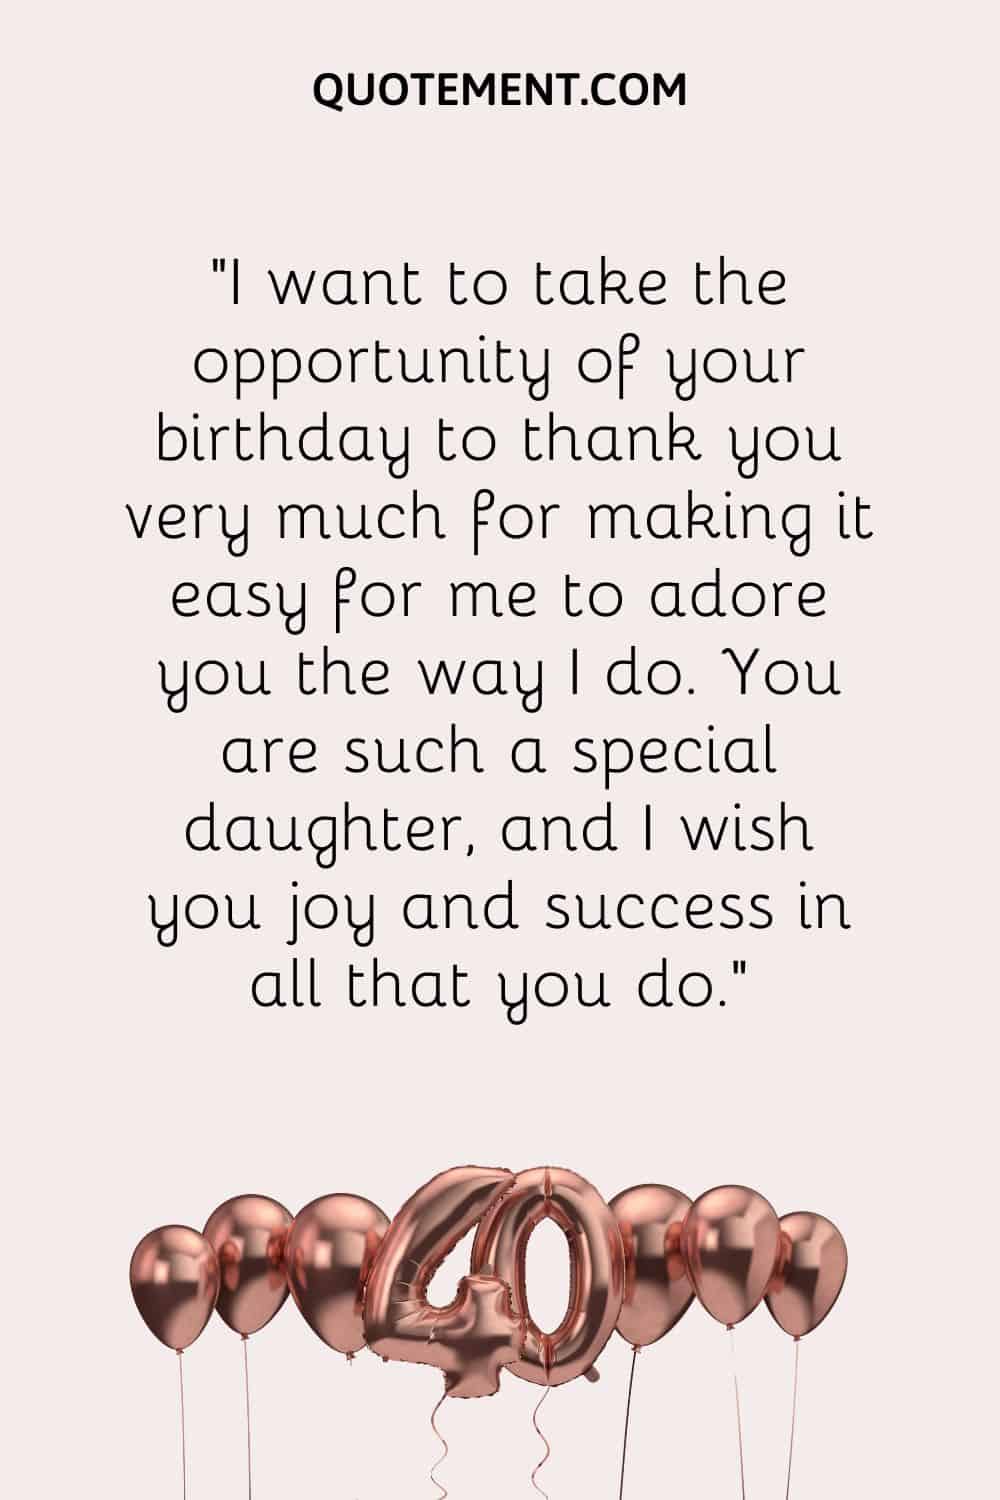 Quiero aprovechar la oportunidad de tu cumpleaños para darte las gracias por hacer que me resulte tan fácil adorarte como lo hago.